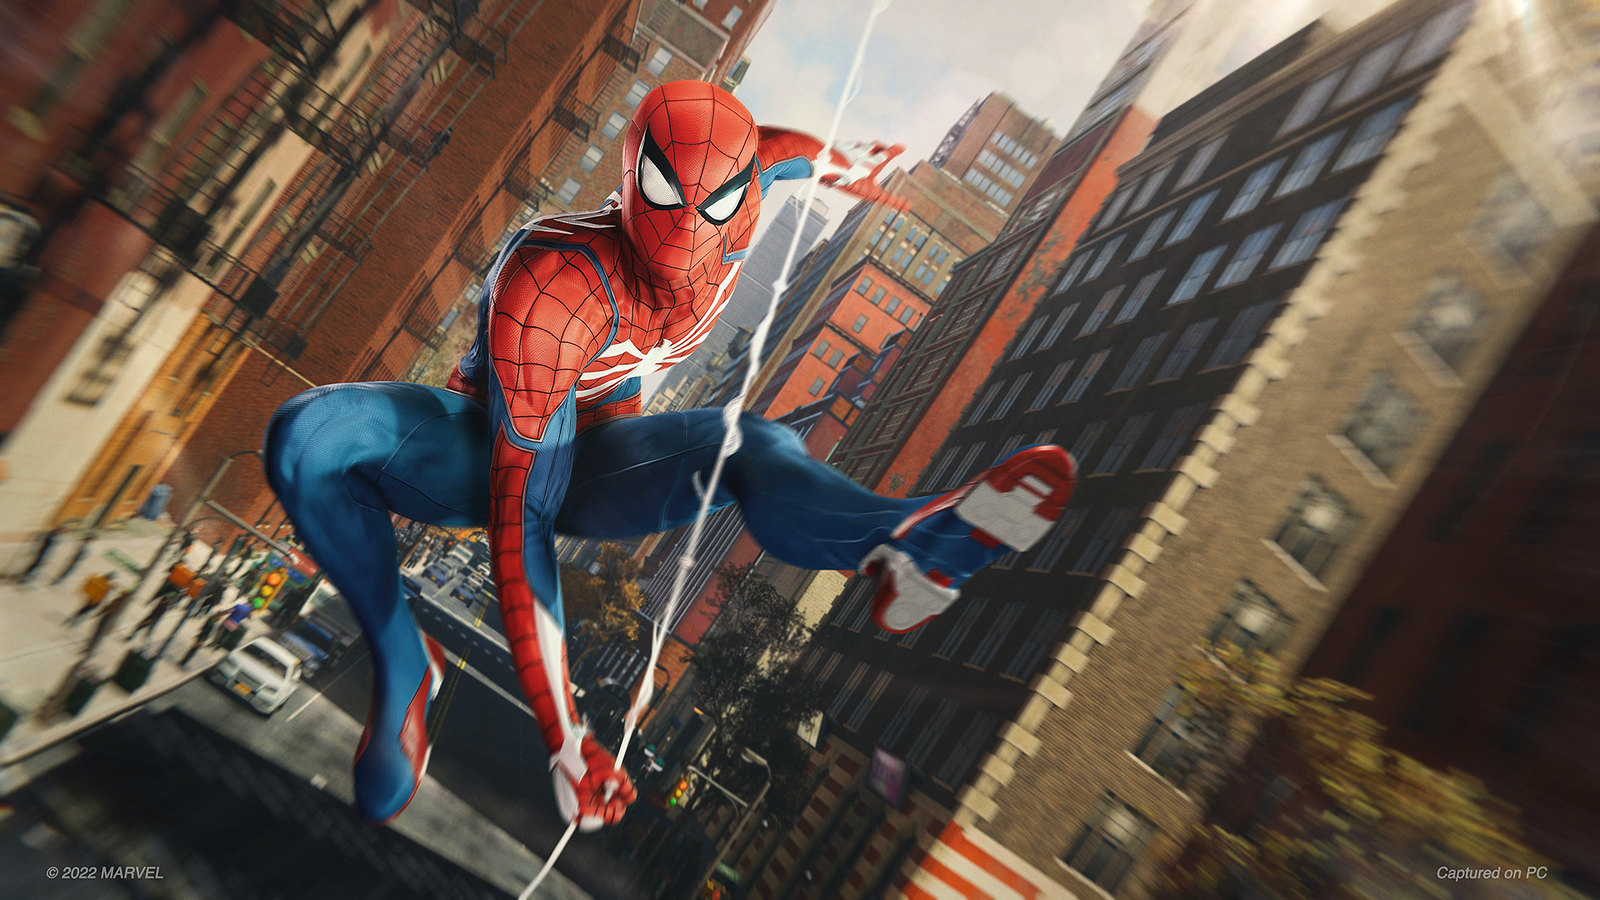 Immagine pubblicata in relazione al seguente contenuto: Spider-Man Remastered e Spider-Man: Miles Morales su PC entro fine 2022 | Nome immagine: news33355_Spider-Man_PC_3.jpg